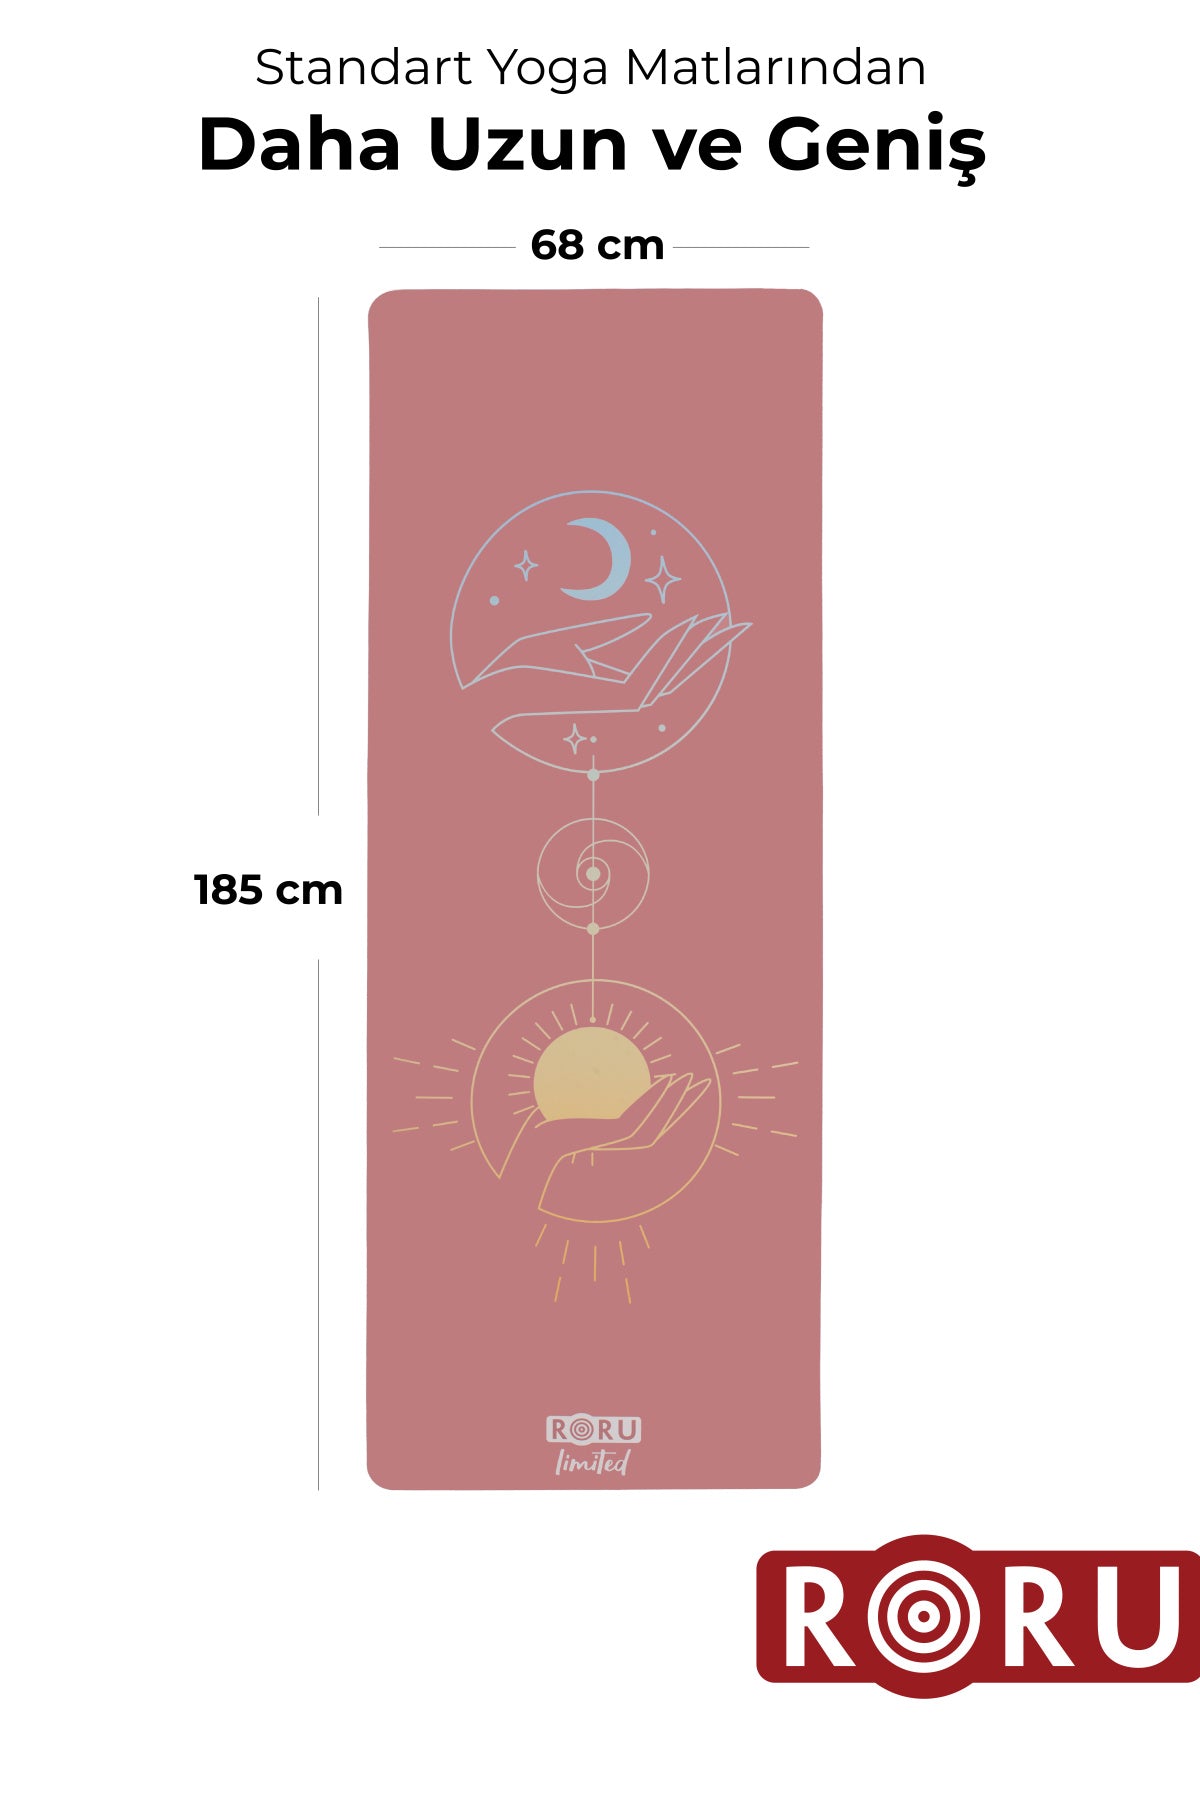 Roru Concept Sun Kaydırmaz Yoga Egzersiz Matı 185 x 68 cm 4 mm Kuru - Nemli Ellere, Doğal Kauçuk